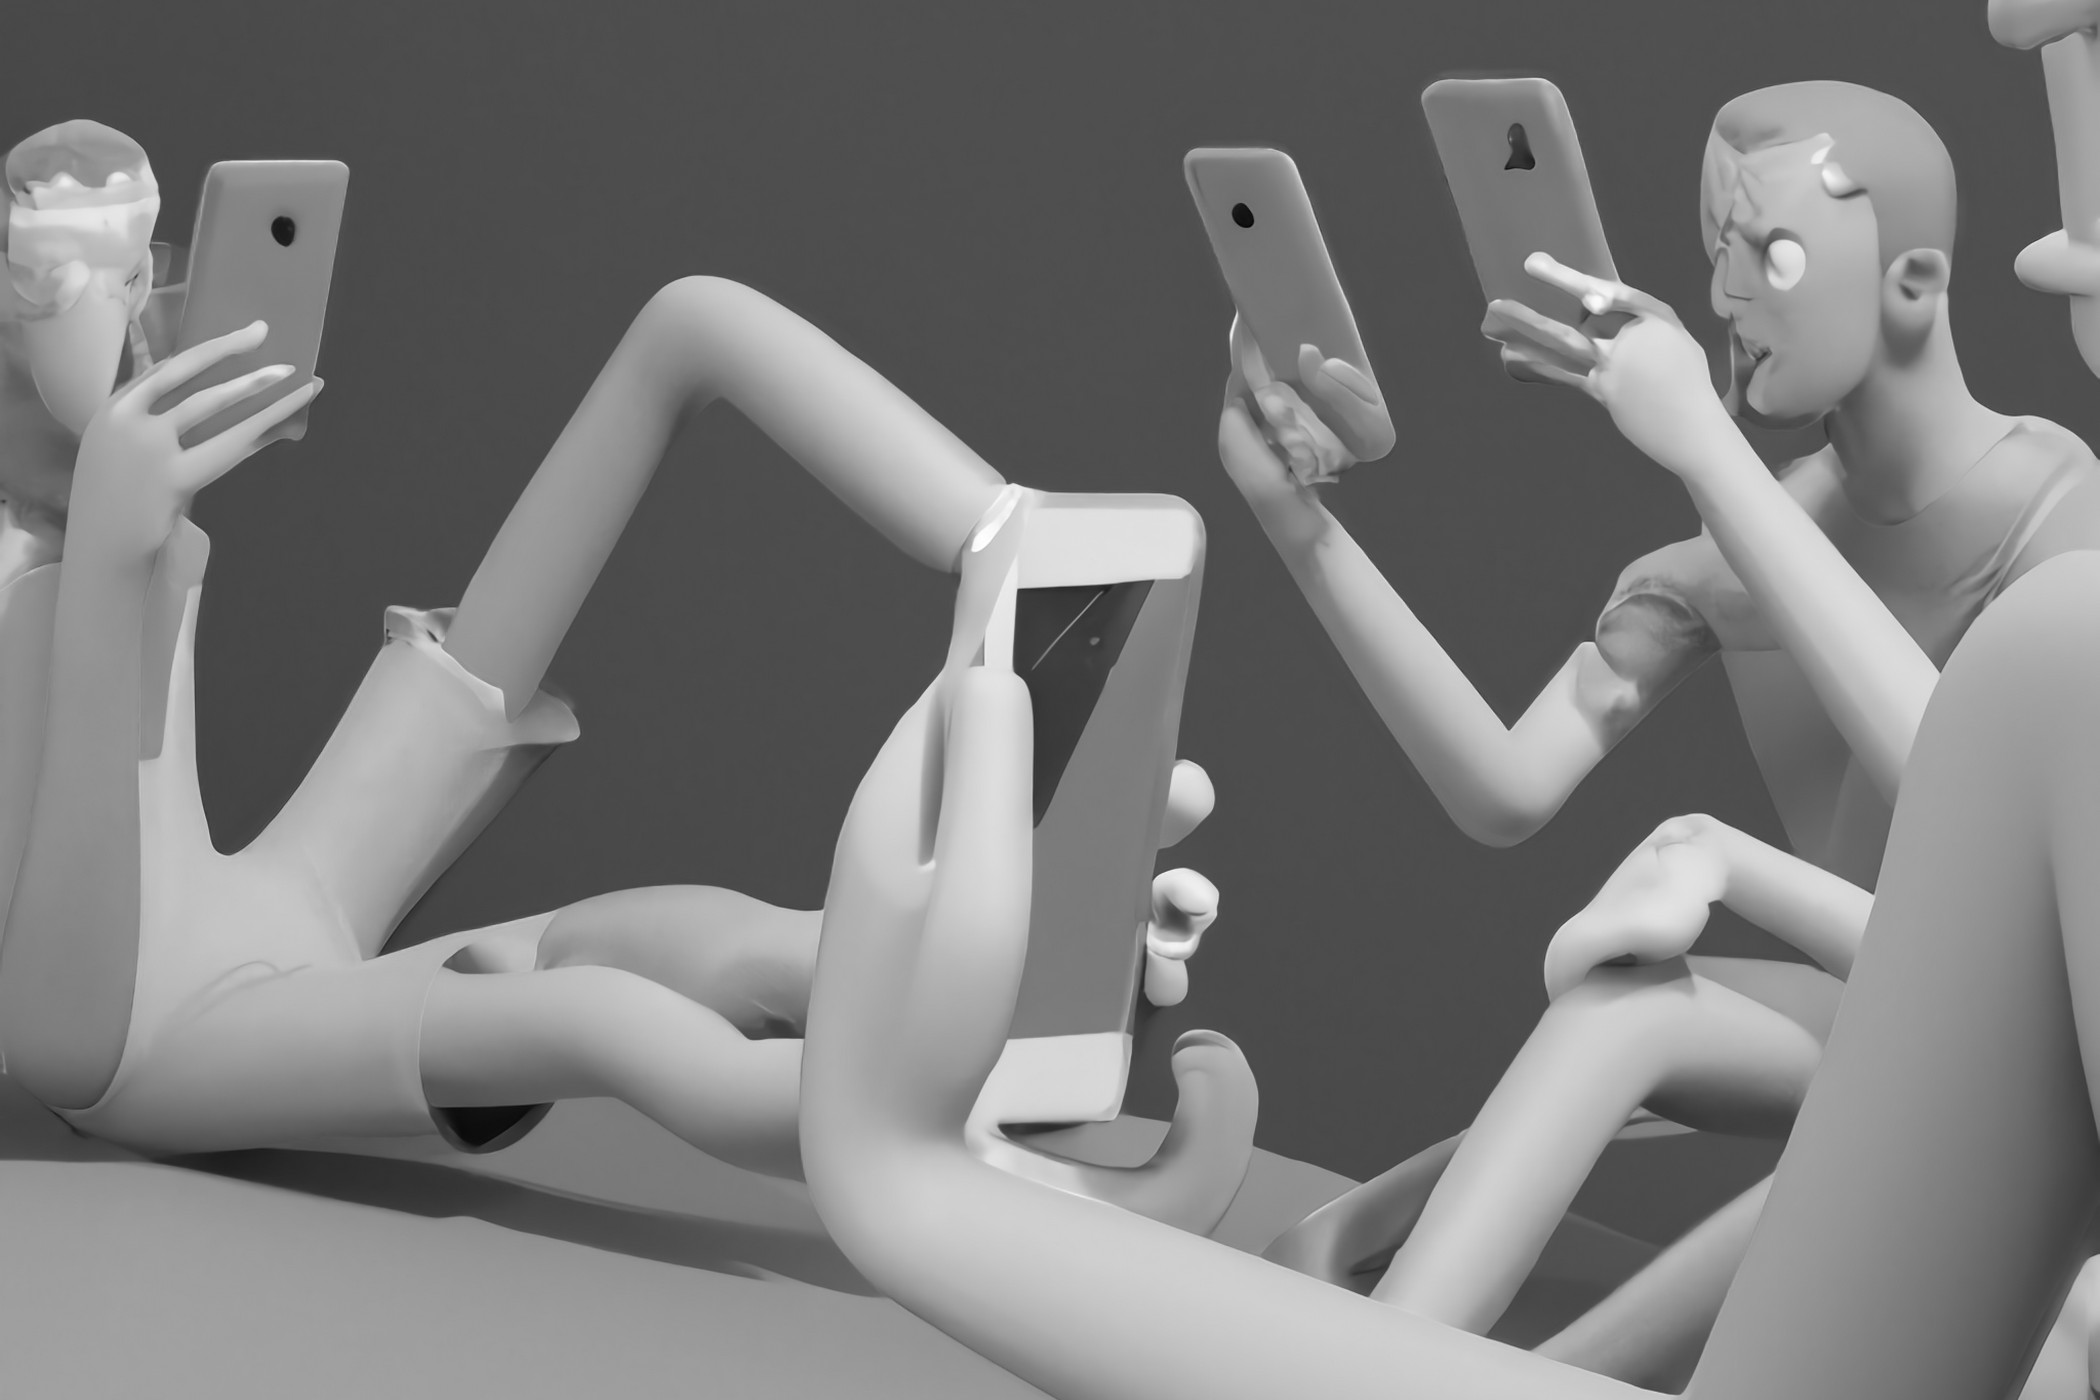 Uma imagem em preto e branco de personagens de desenhos animados olhando para seus telefones.